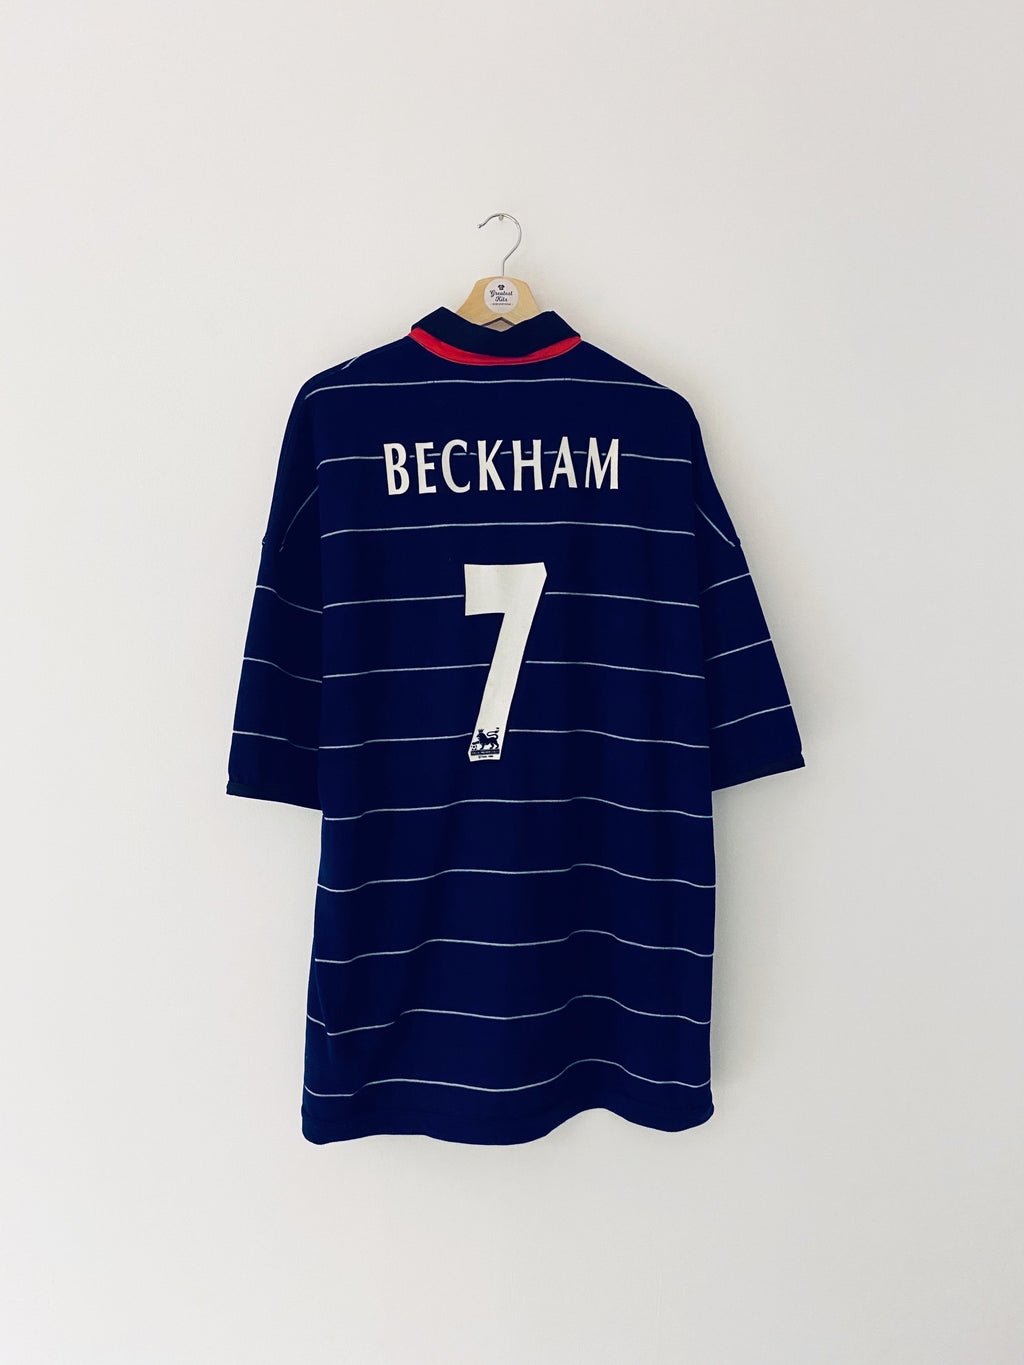 1999/00 Maillot extérieur Manchester United Beckham #7 (XXL) 9/10 